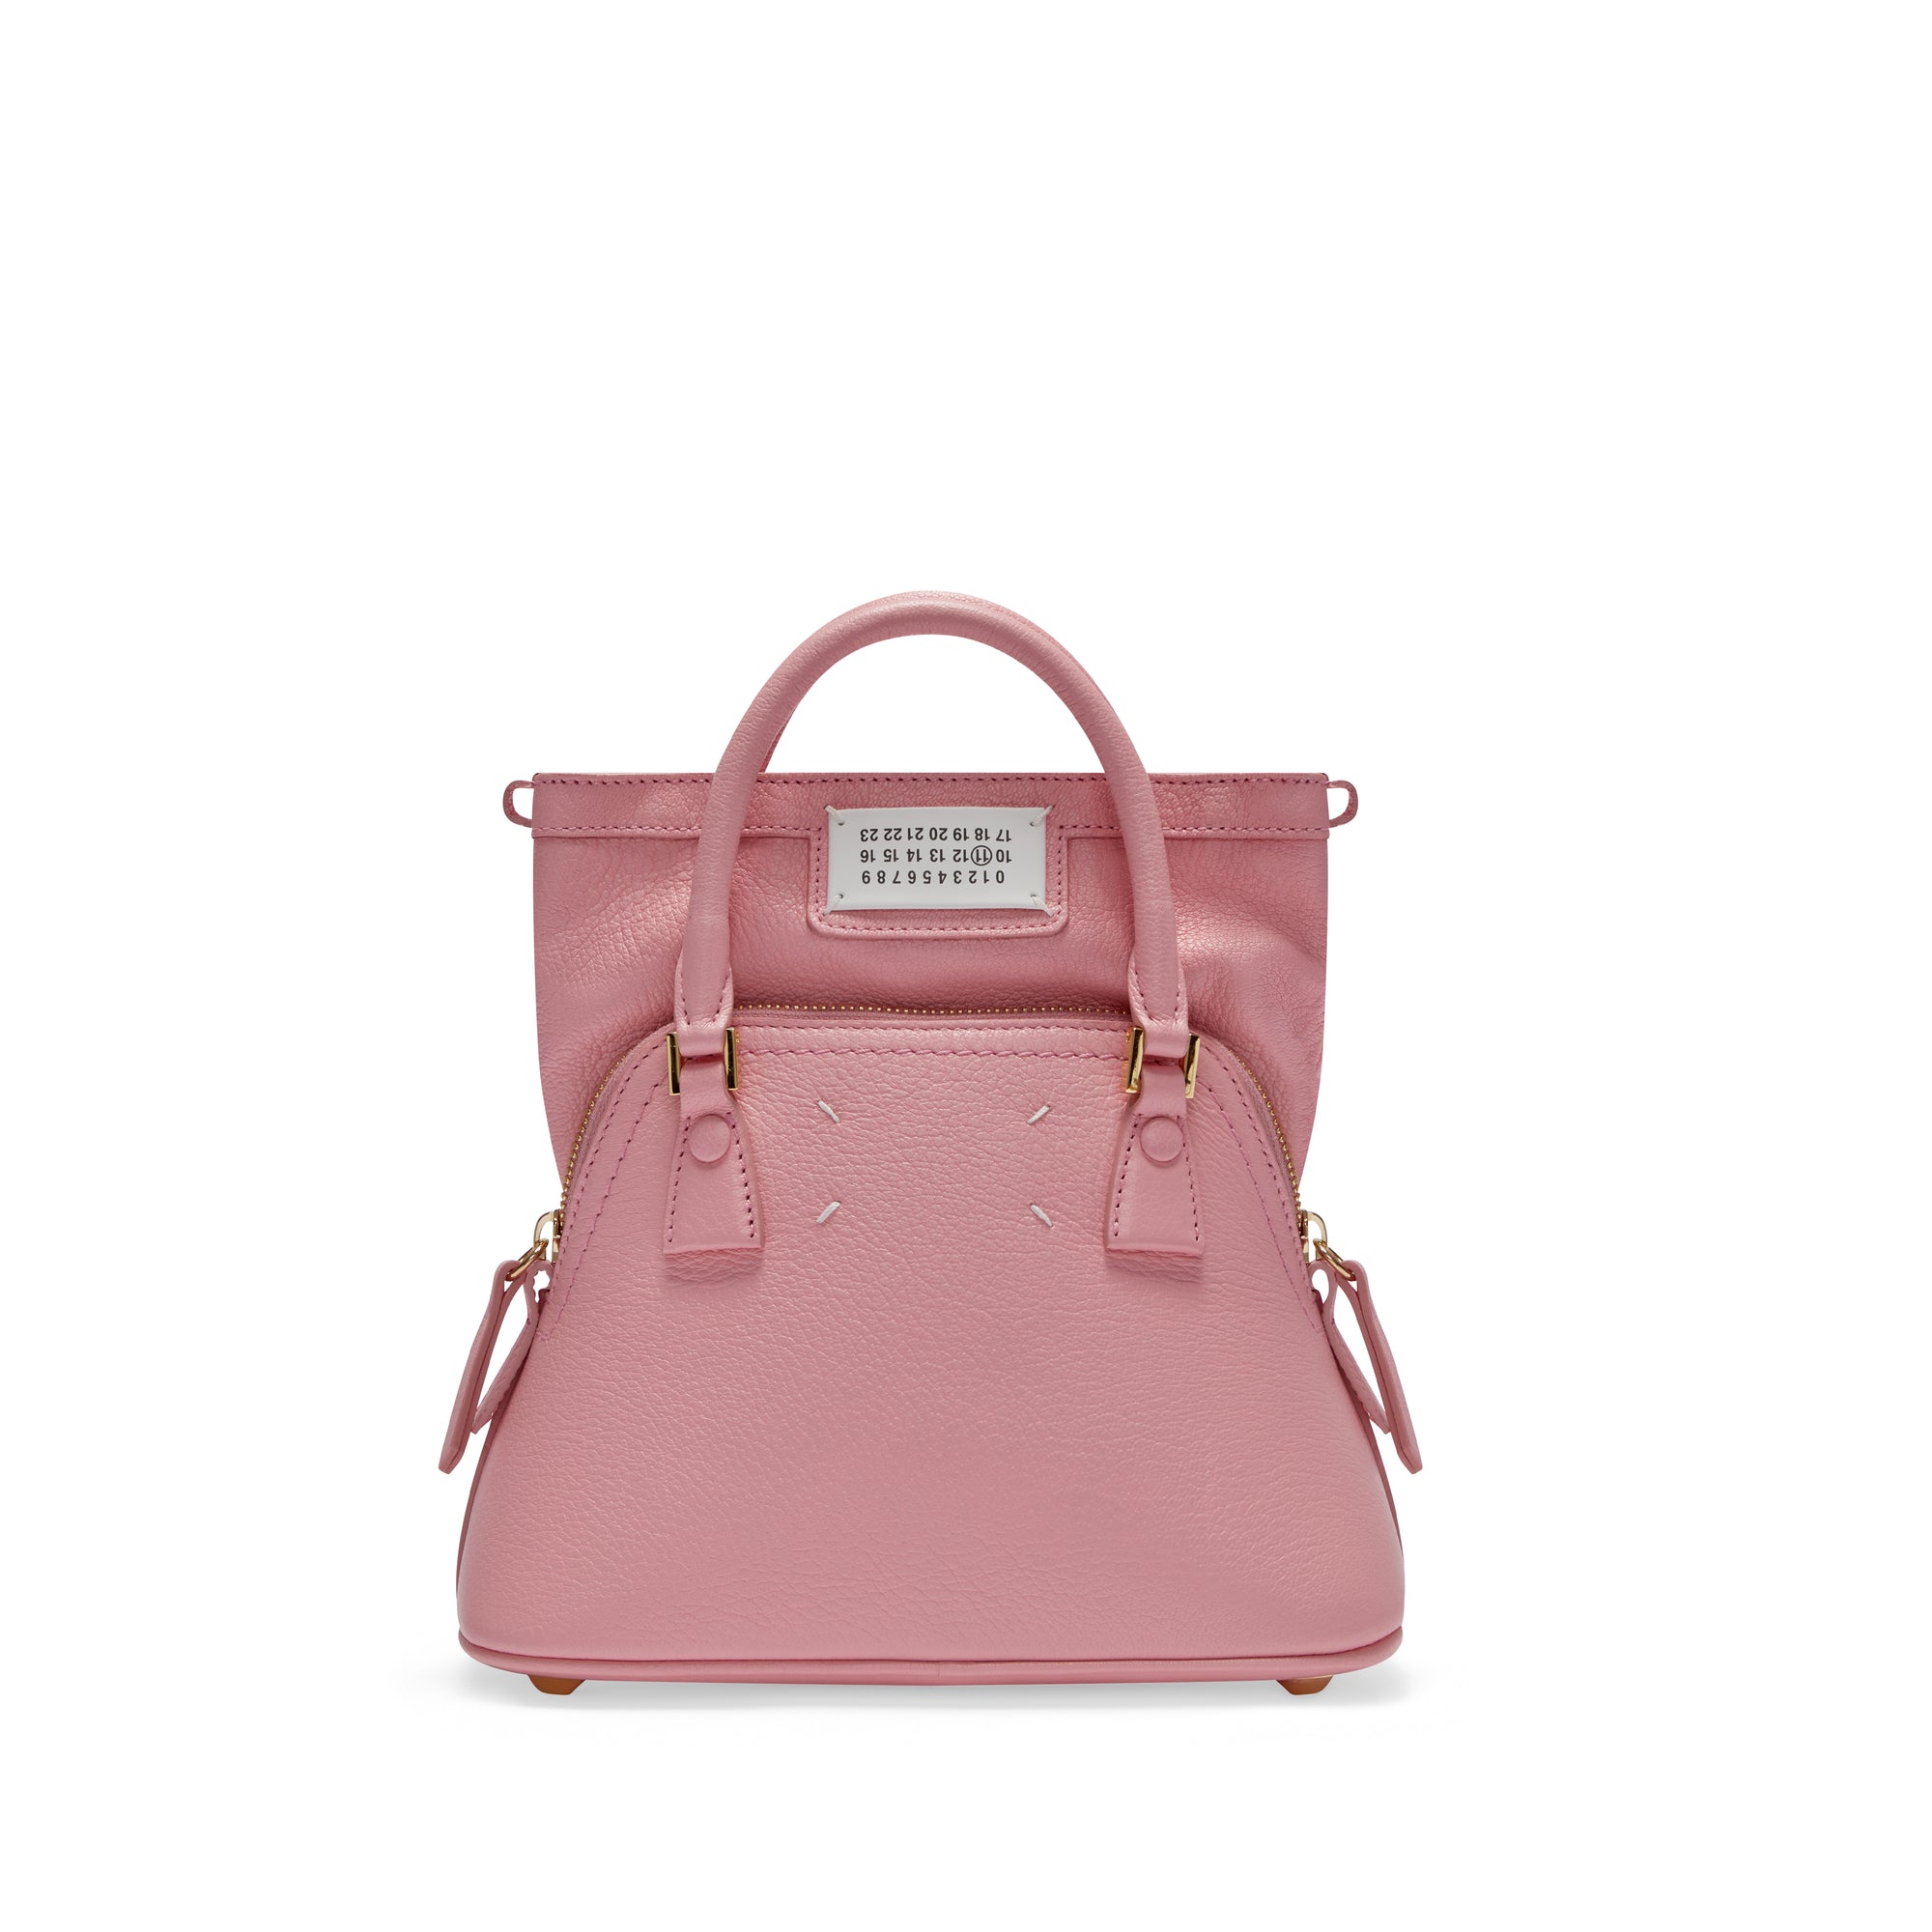 Maison Margiela - Women’s 5AC Classique Micro Bag - (Pink) view 1